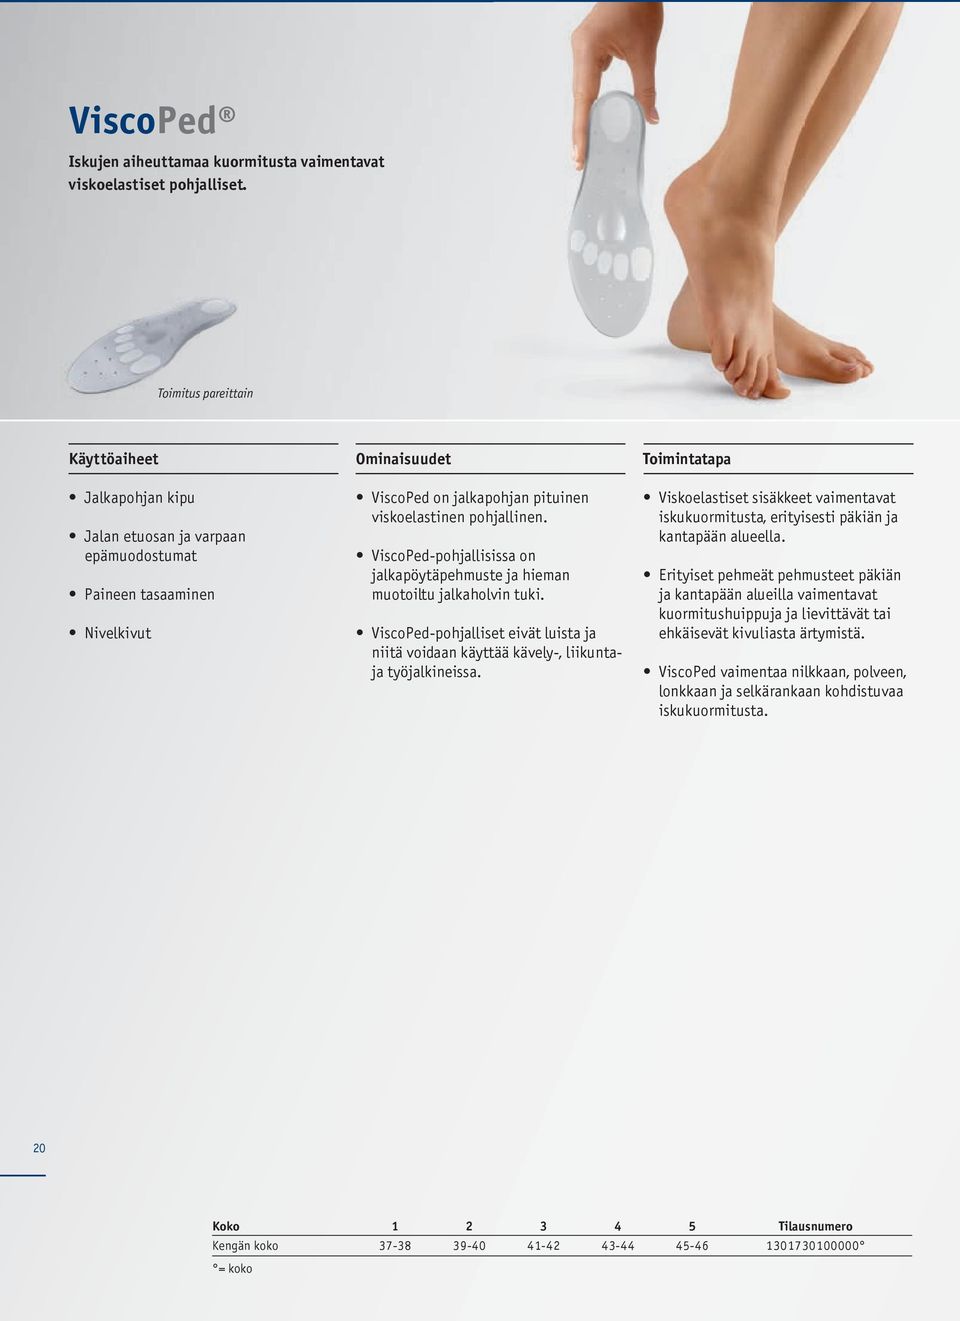 ViscoPed-pohjallisissa on jalkapöytäpehmuste ja hieman muotoiltu jalkaholvin tuki. ViscoPed-pohjalliset eivät luista ja niitä voidaan käyttää kävely-, liikuntaja työjalkineissa.